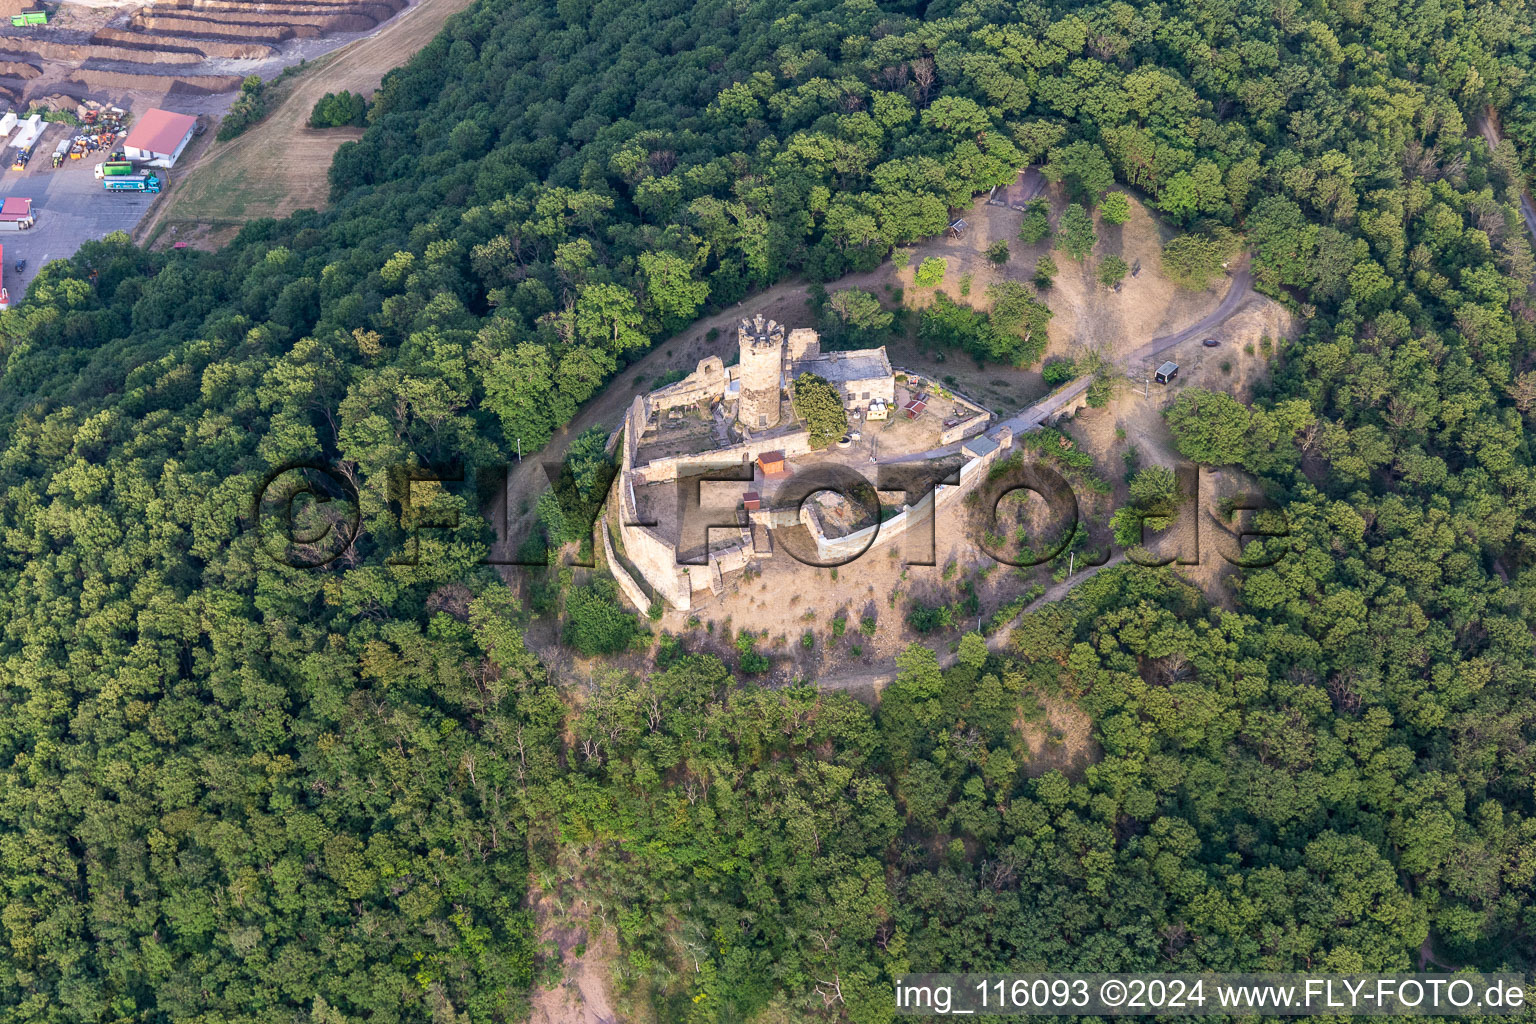 Photographie aérienne de Ruines et vestiges des murs de l'ancien complexe du château et forteresse de Mühlburg dans le quartier de Mühlberg à Drei Gleichen dans le département Thuringe, Allemagne